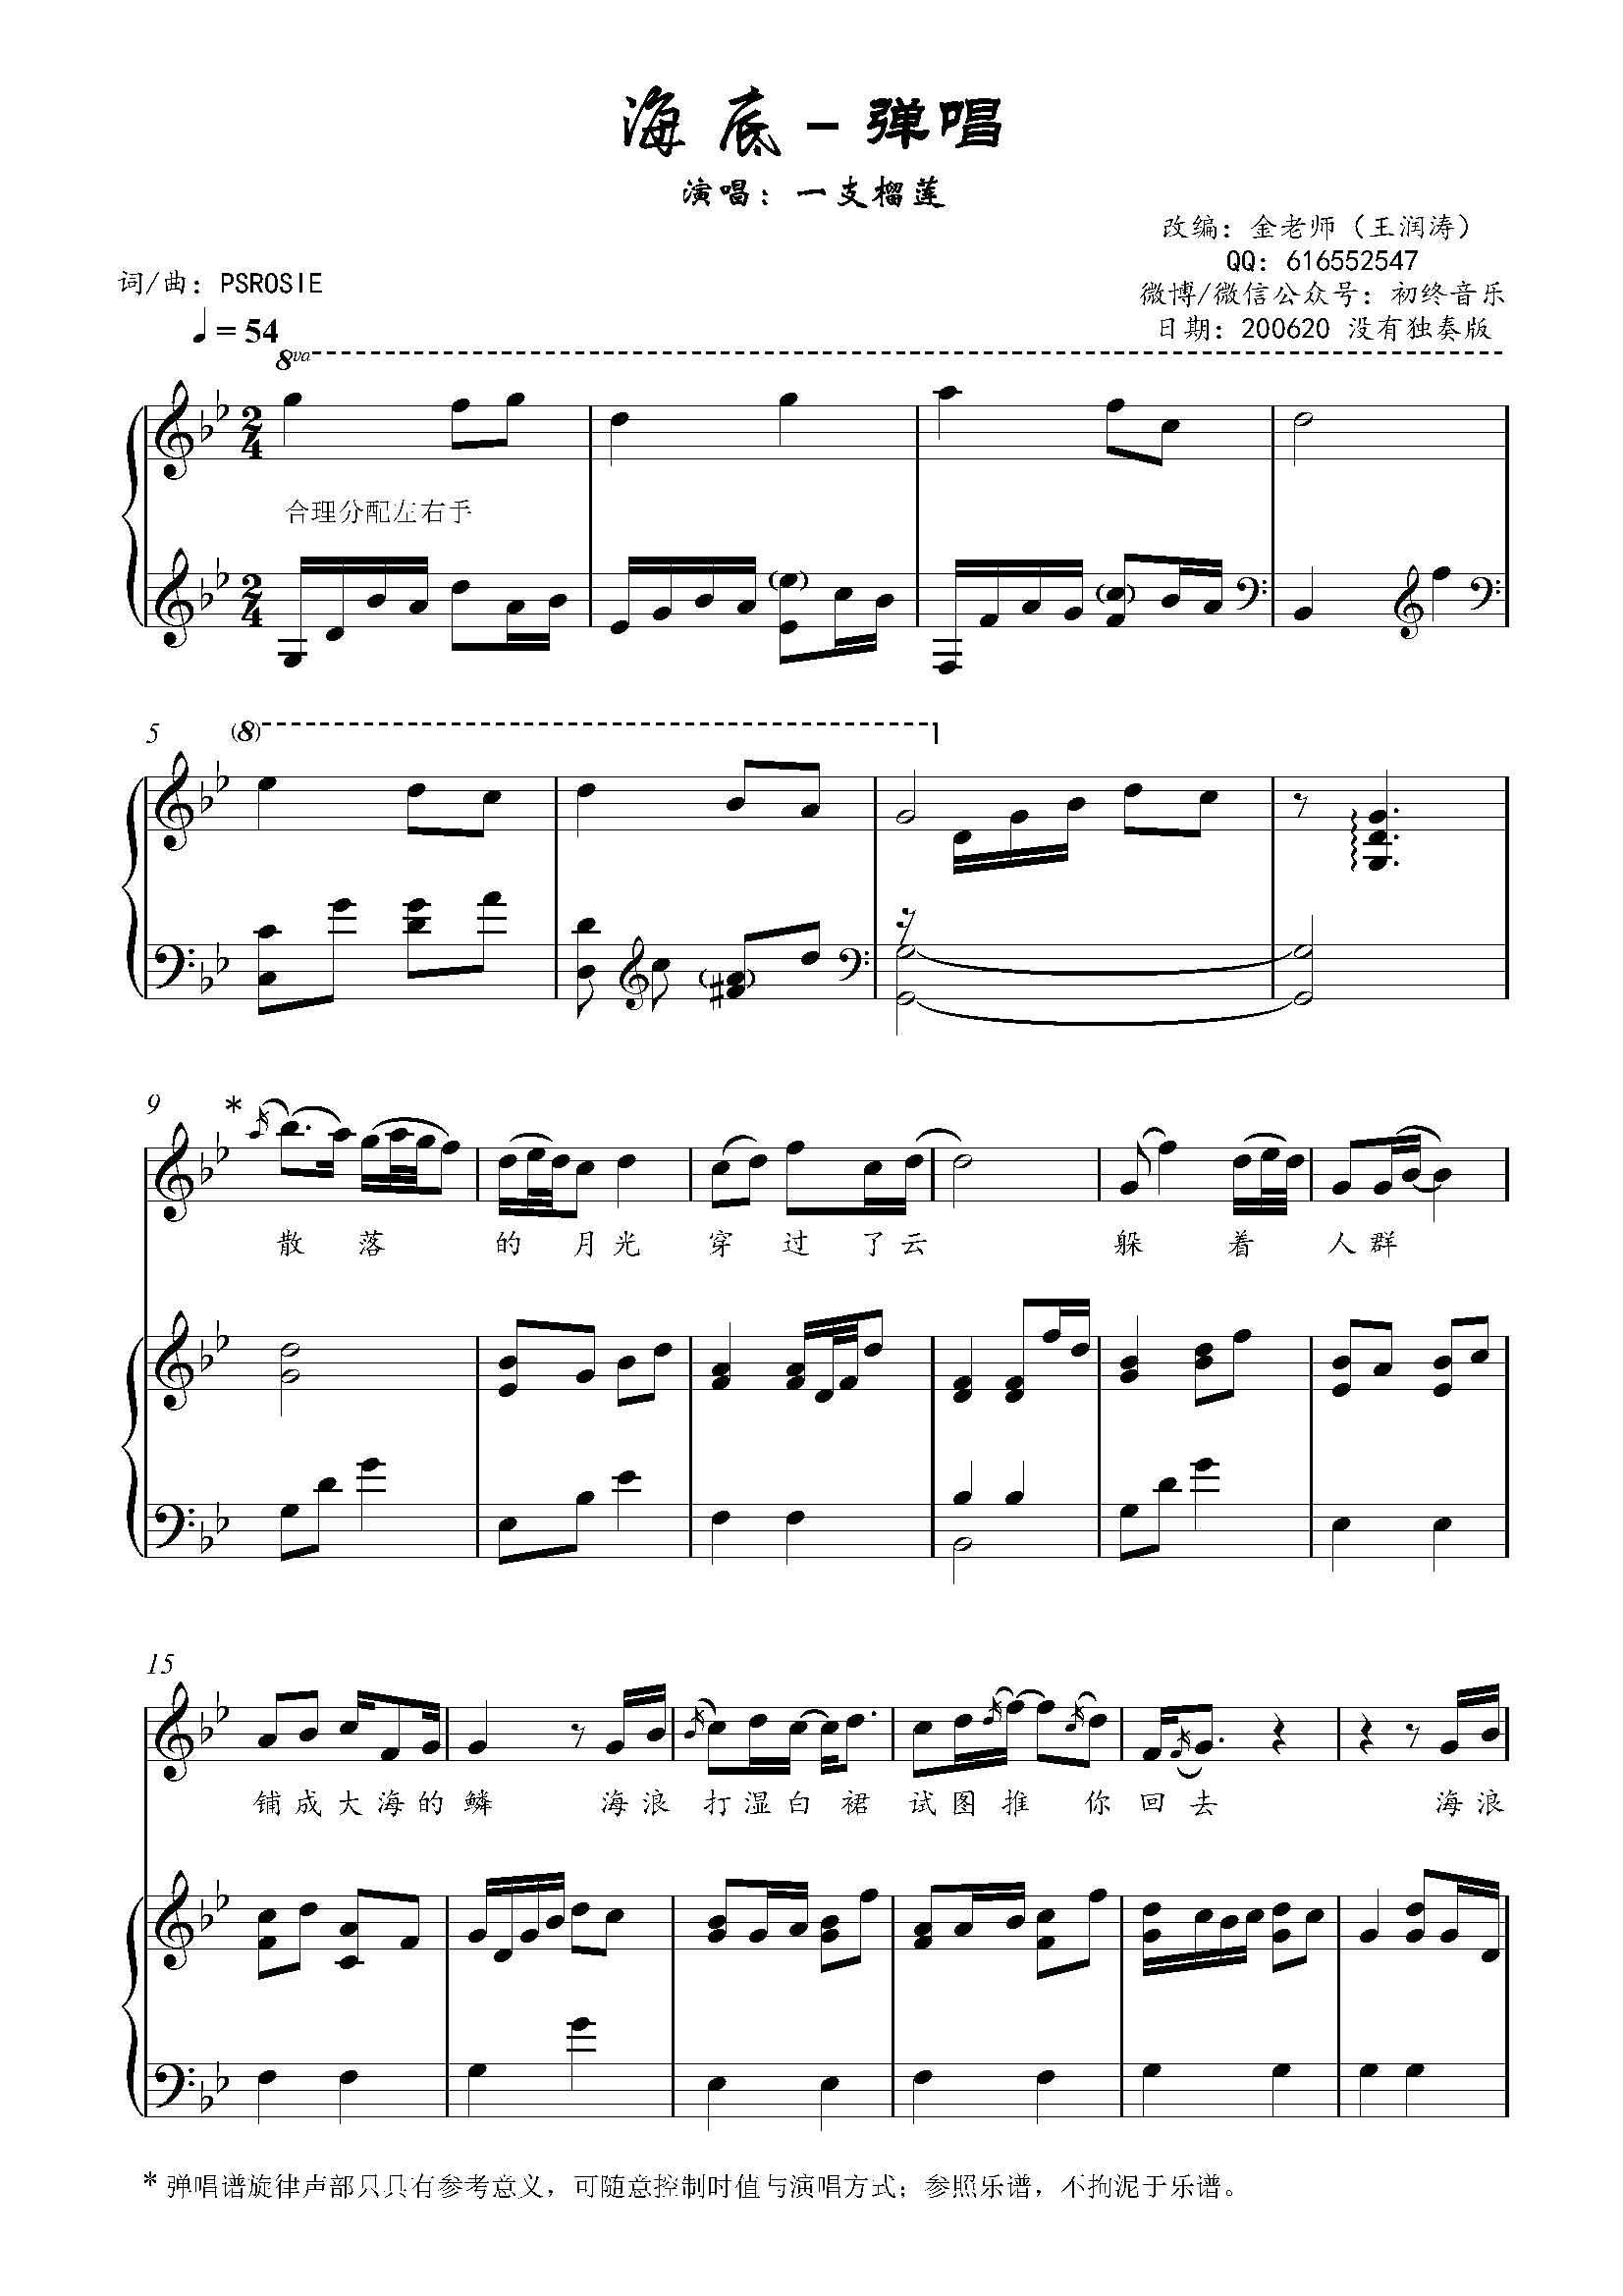 海底金老师弹唱钢琴谱200620